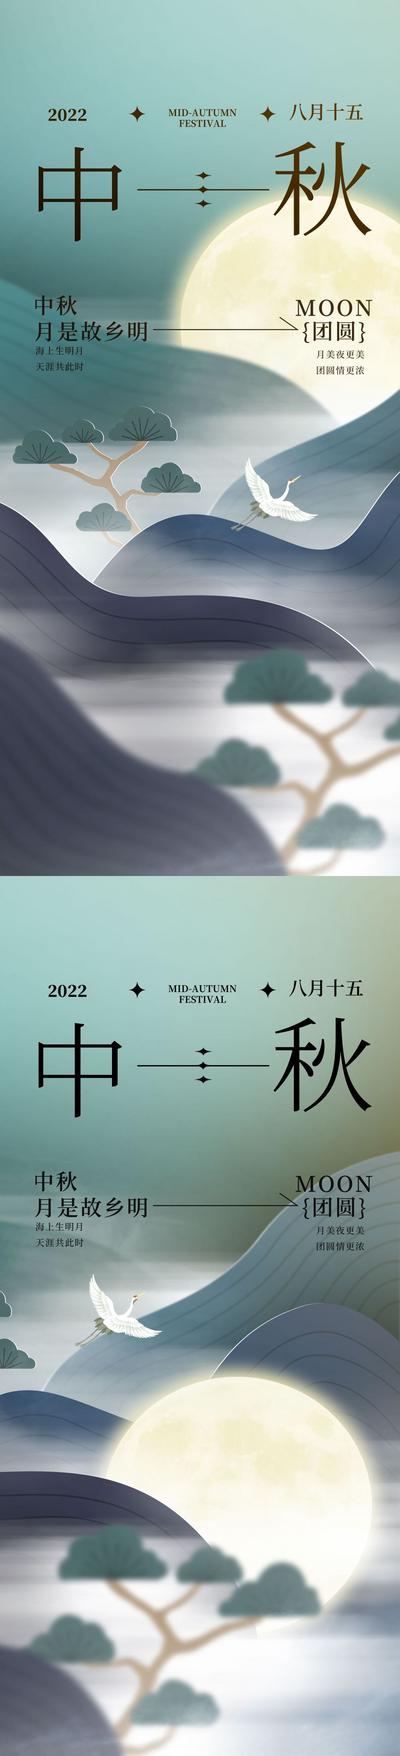 南门网 海报 中国传统节日 中秋节 月亮 仙鹤 山水 新中式 意境